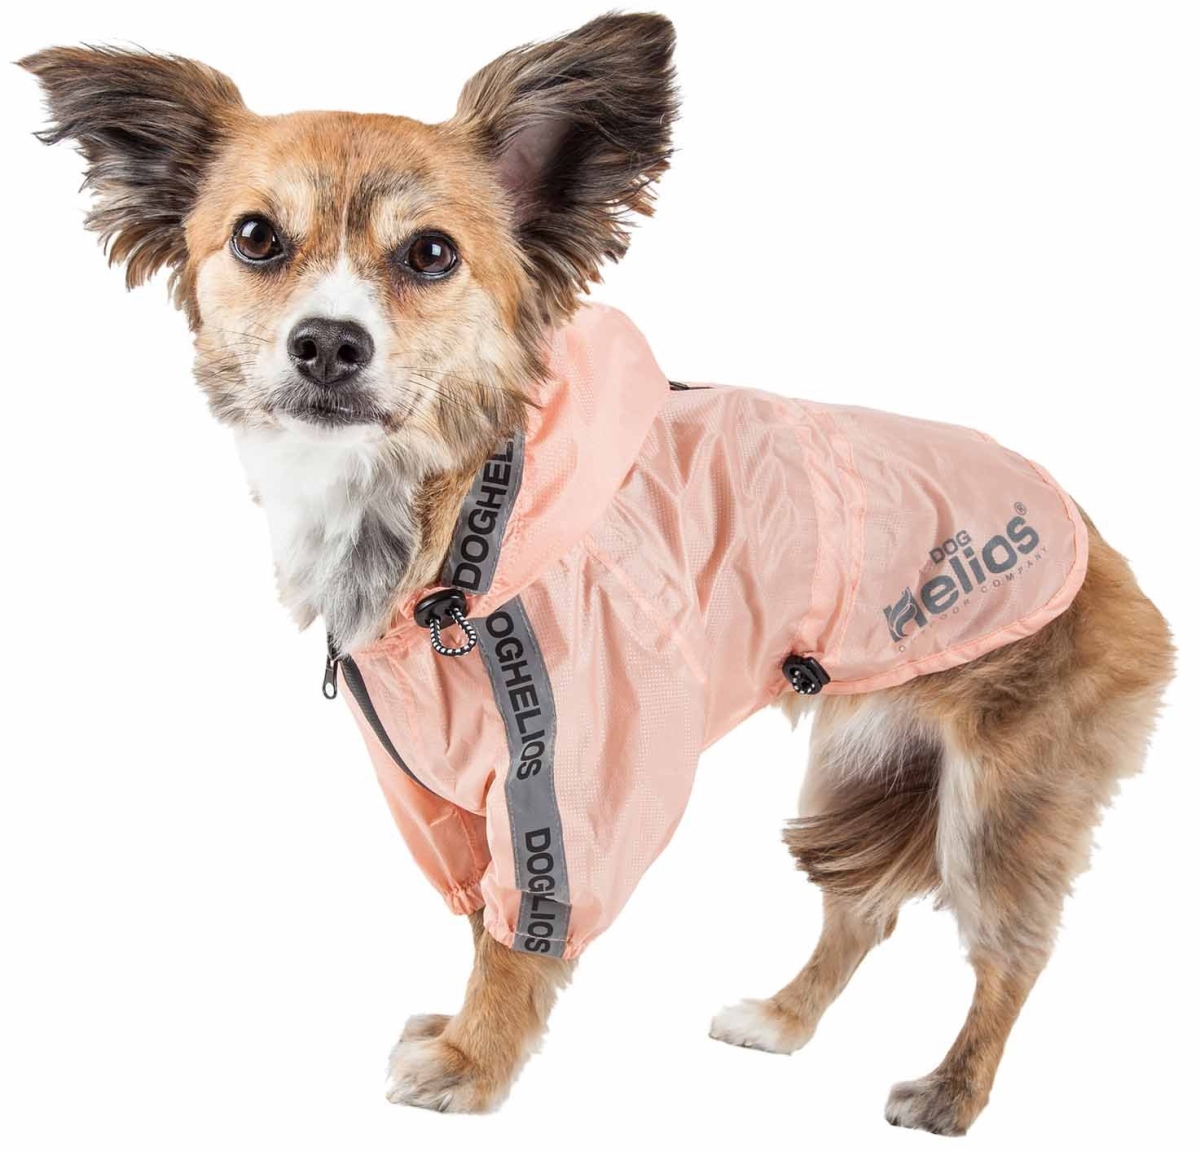 R9pclg Torrential Shield Waterproof Multi-adjustable Pet Dog Windbreaker Raincoat - Peach, Large